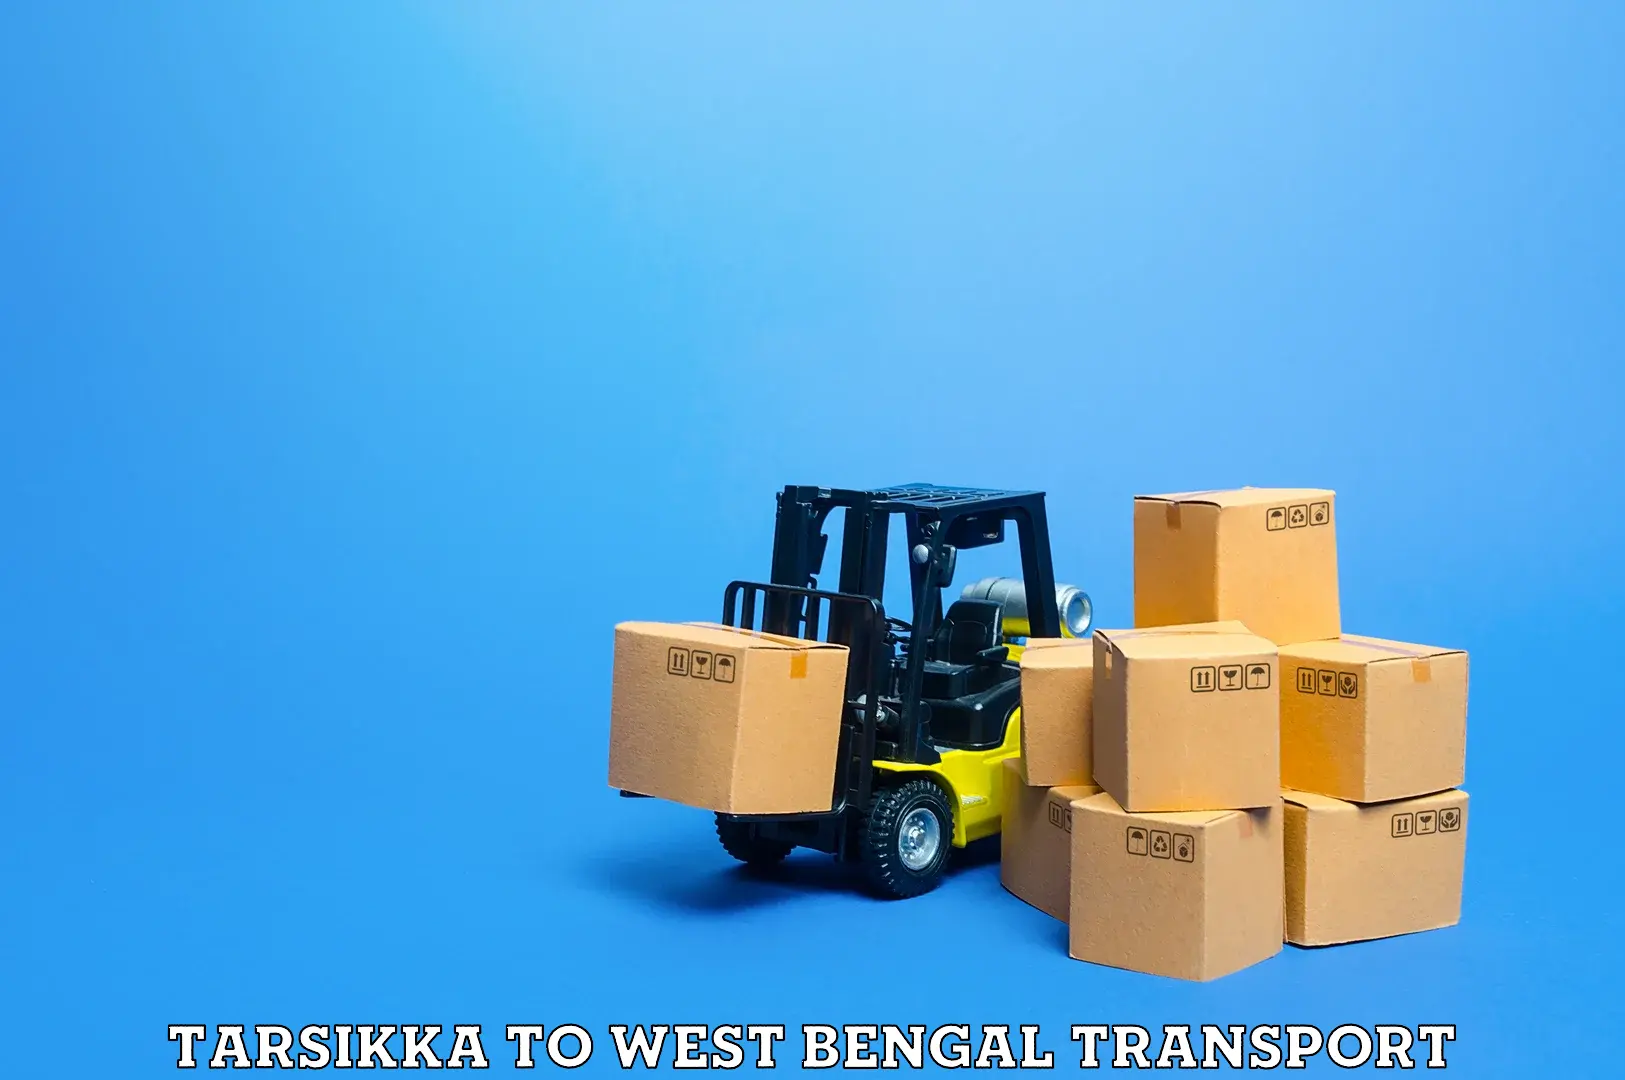 Delivery service Tarsikka to Dantan